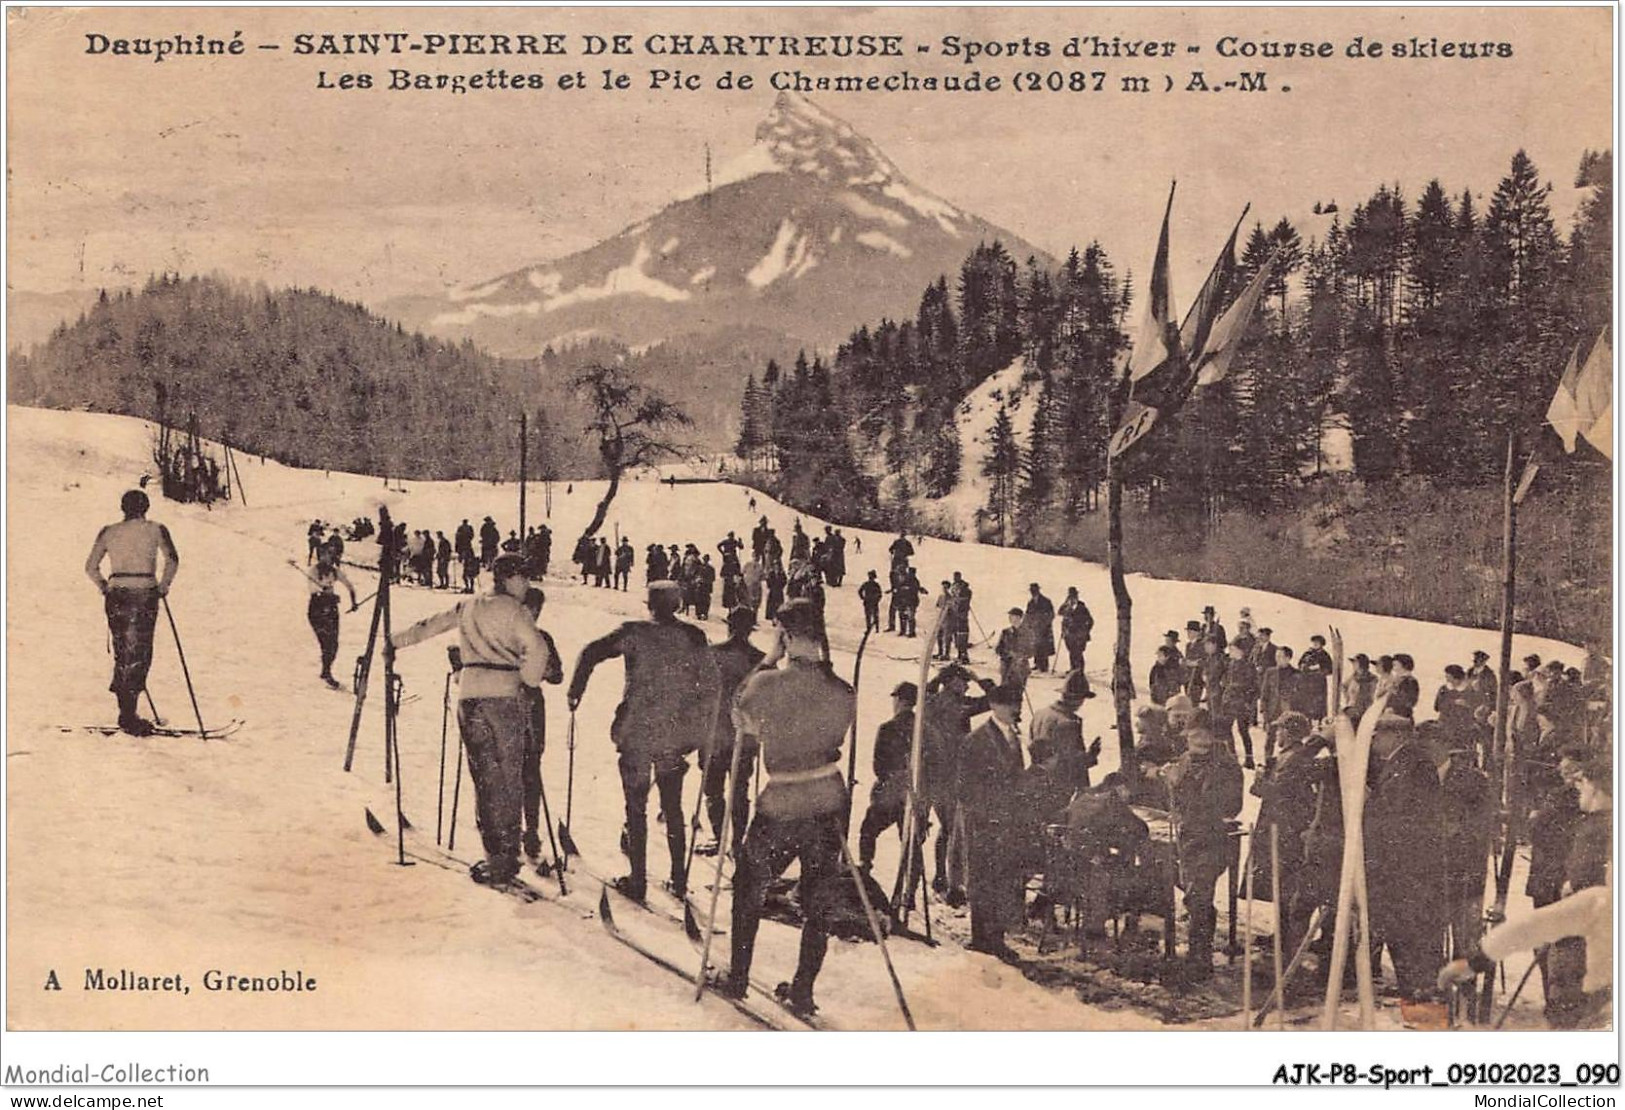 AJKP8-0804 - SPORT - SAINT-PIERRE DE CHARTREUSE - SPORTS D'HIVER - COURSE DE SKIEURS  - Mountaineering, Alpinism